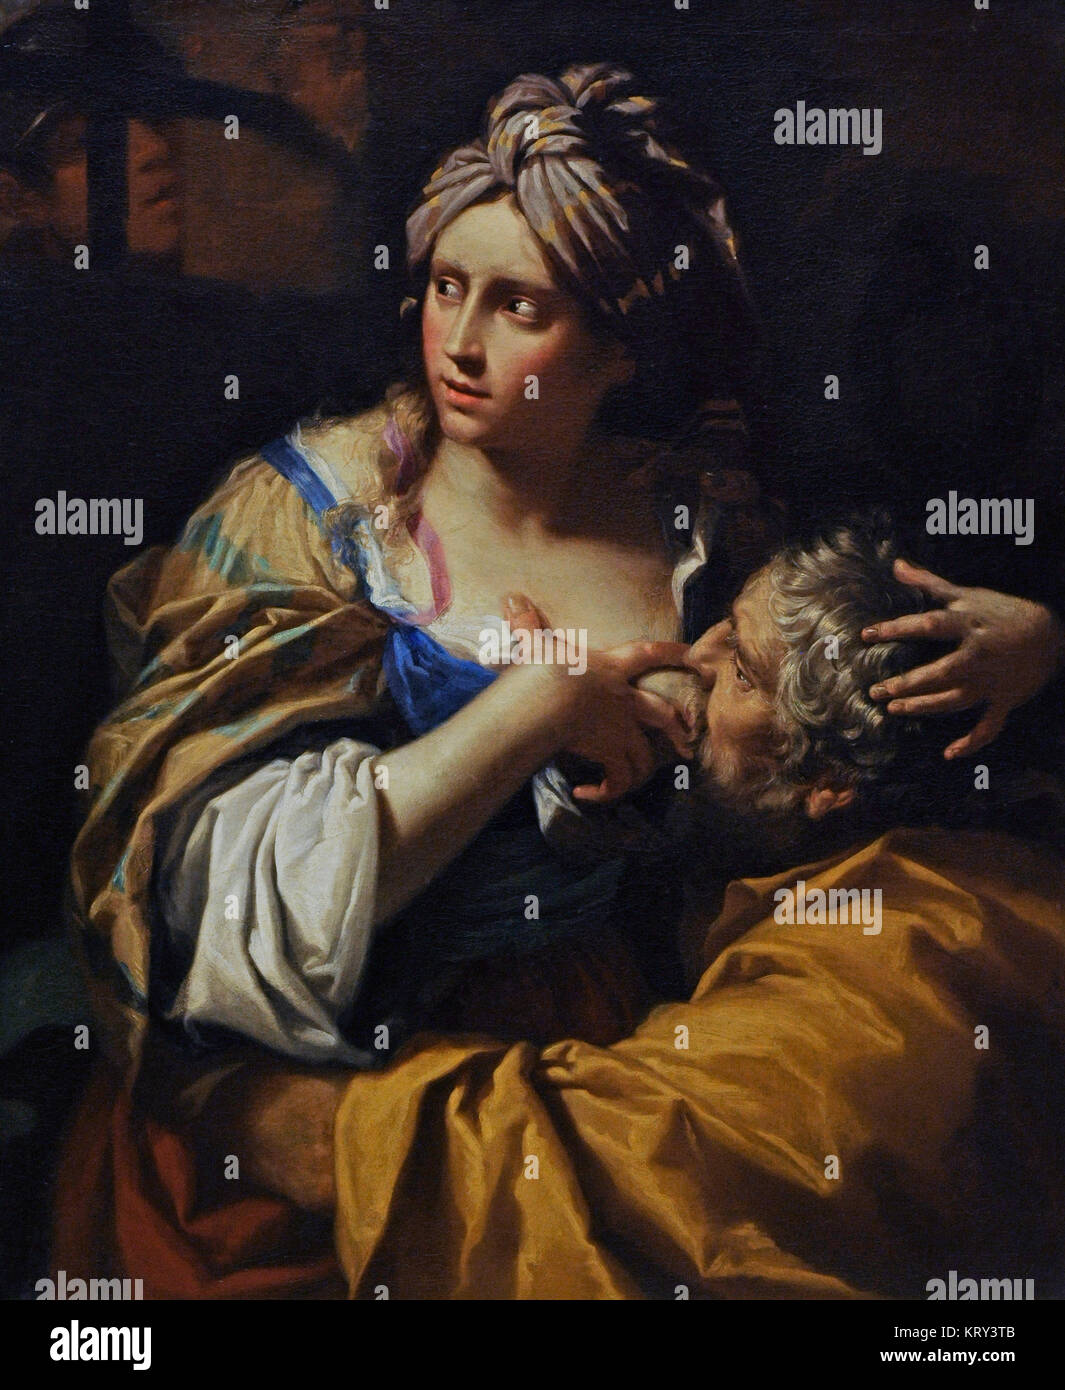 Lorenzo Pasinelli (1629-1700). Italienischer Maler. Römischen Nächstenliebe, Ca. 1670. National Gallery. Oslo. Norwegen. Stockfoto